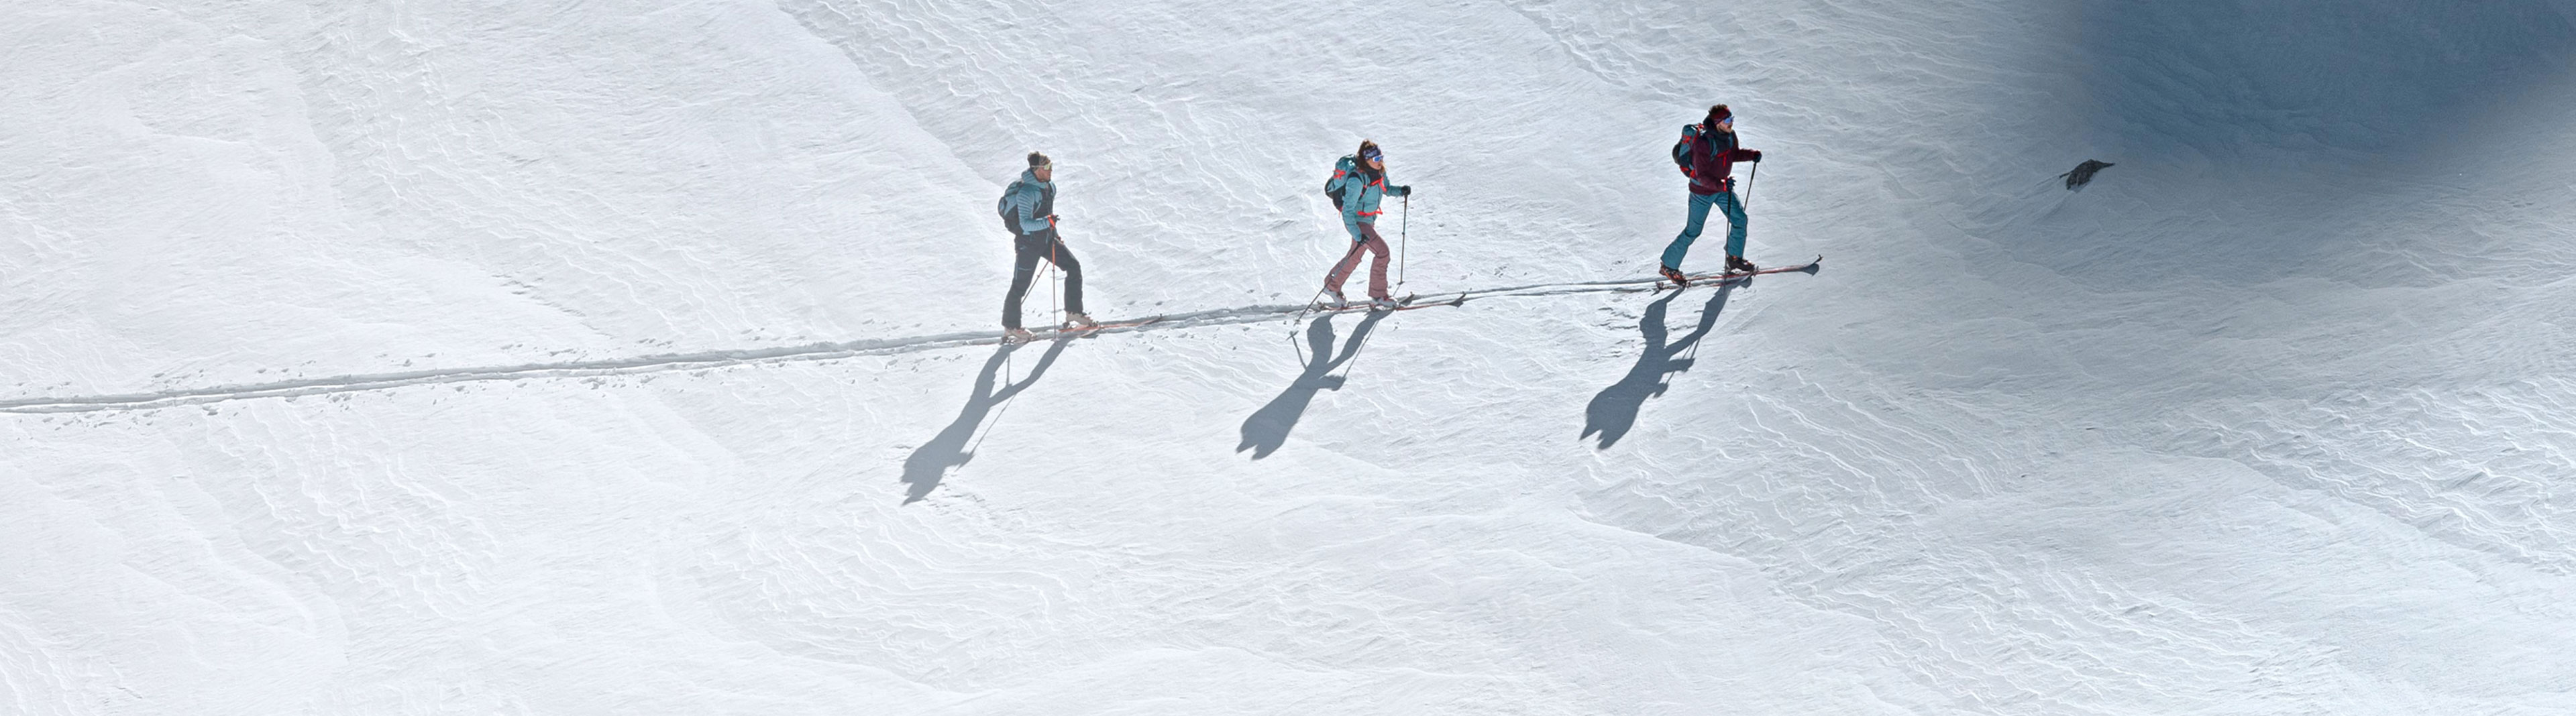 Entry into skitouring: on-piste ski tour